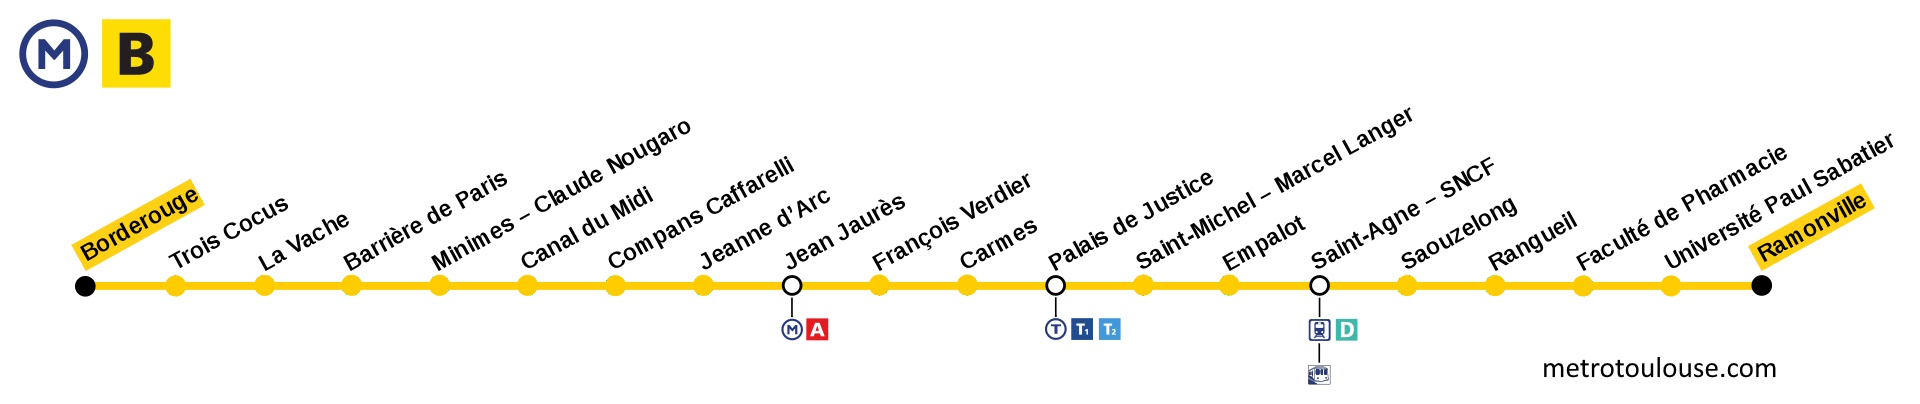 Linea B del Metro de Toulouse